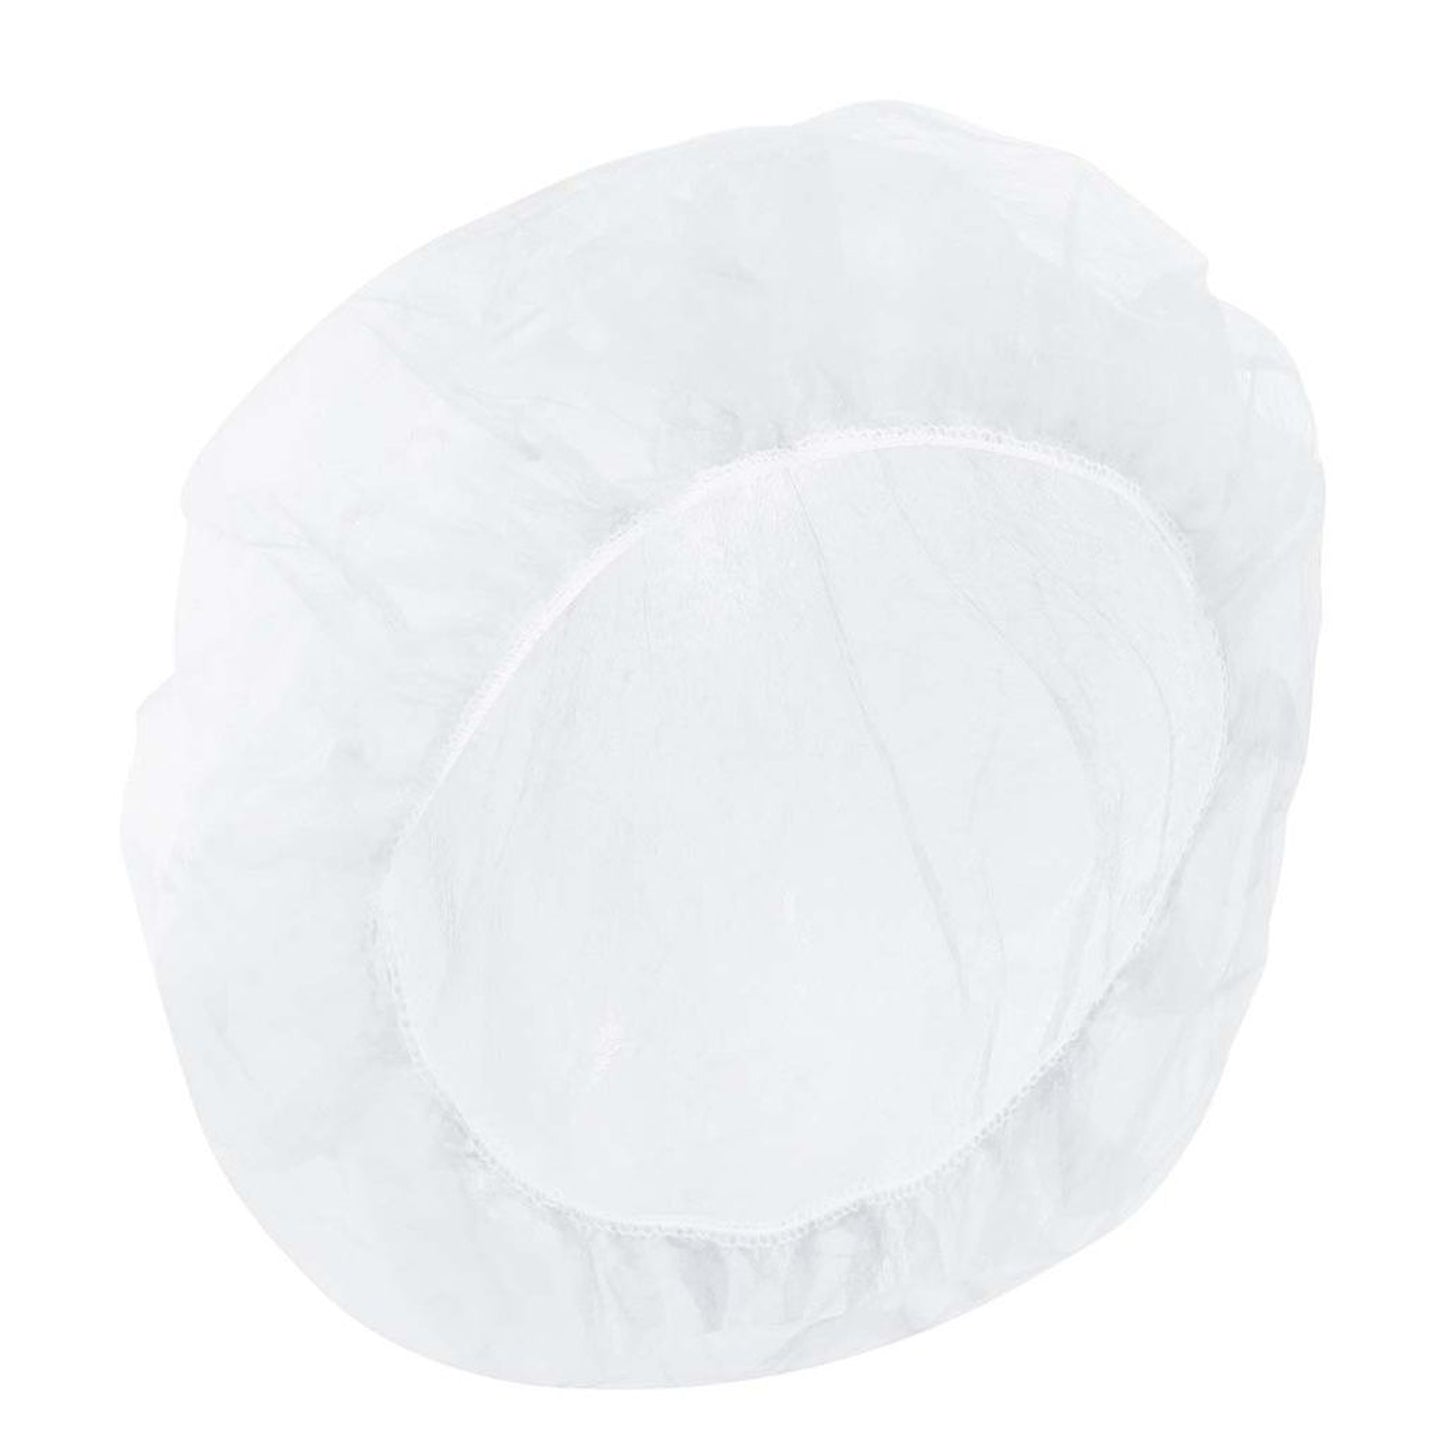 Dach Schutzhaube Kopfbedeckung weiß 100er Pack